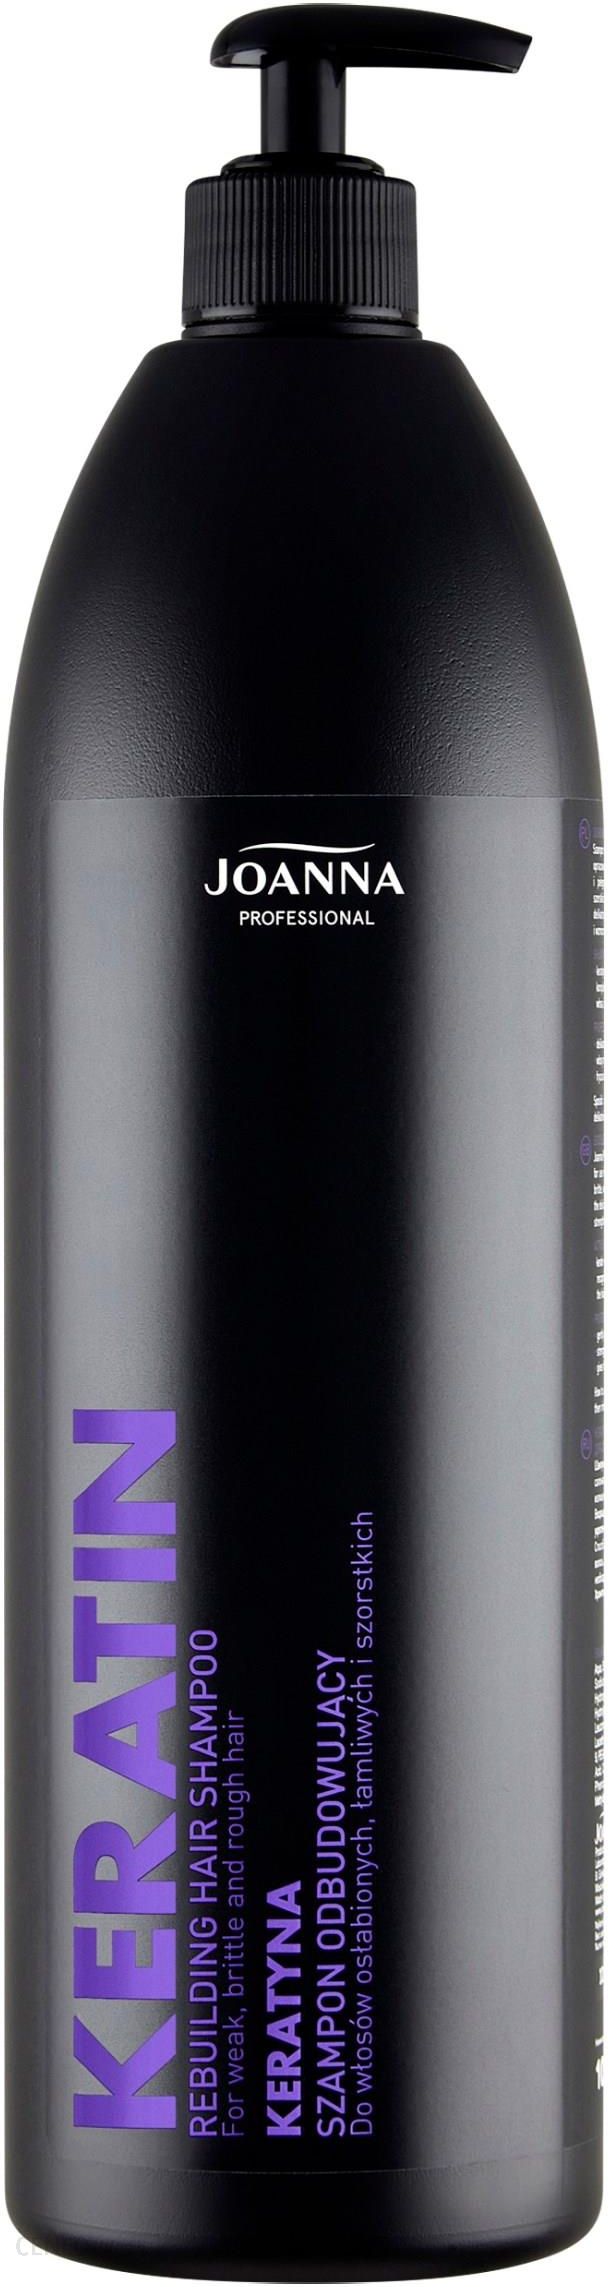 szampon joanna keratynowy professional skład